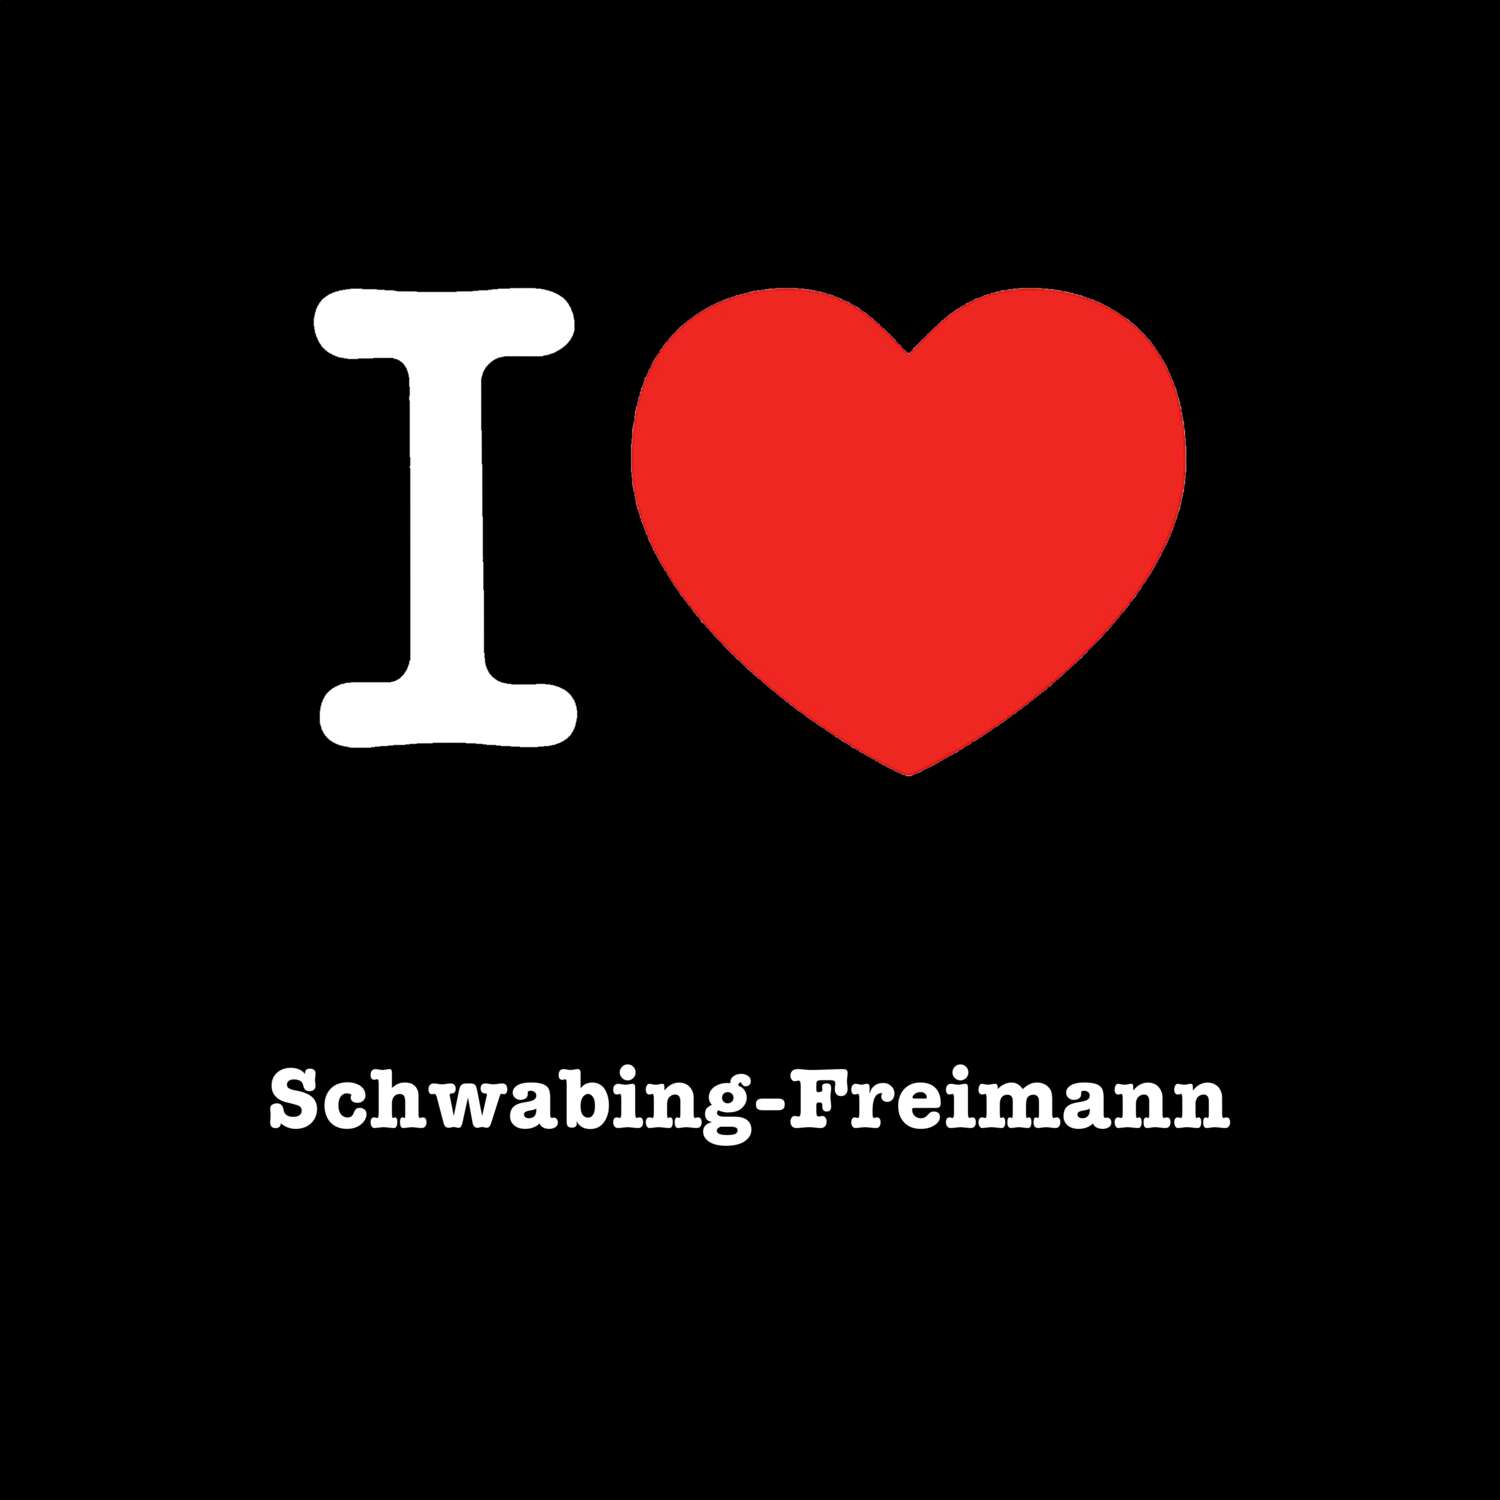 Schwabing-Freimann T-Shirt »I love«